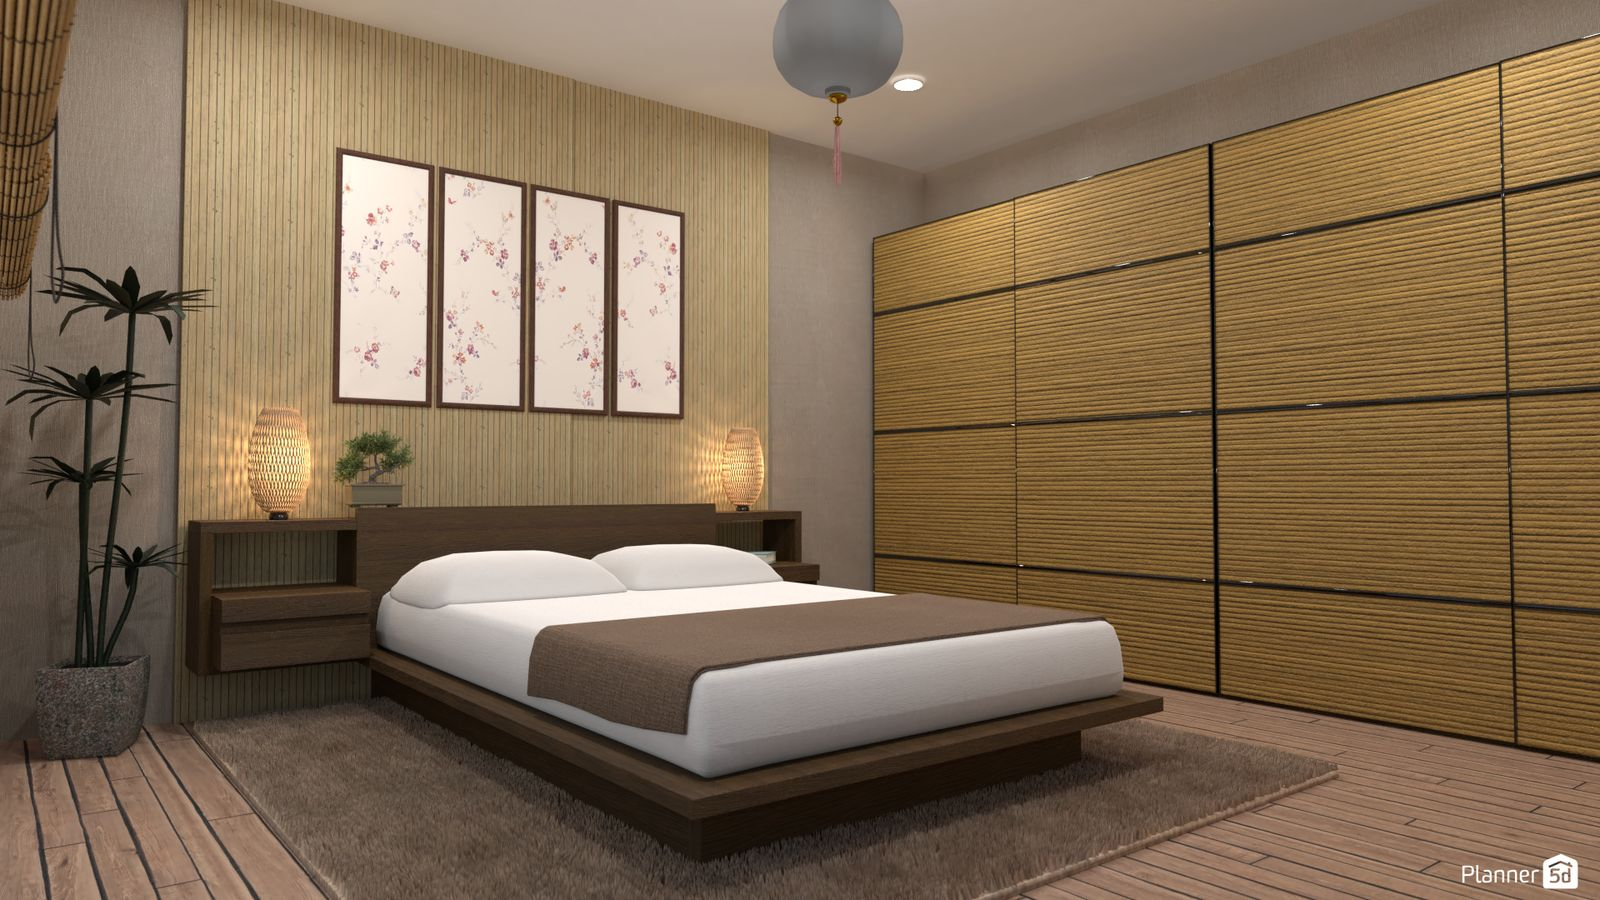 bedroom design with planner 5D floor planner